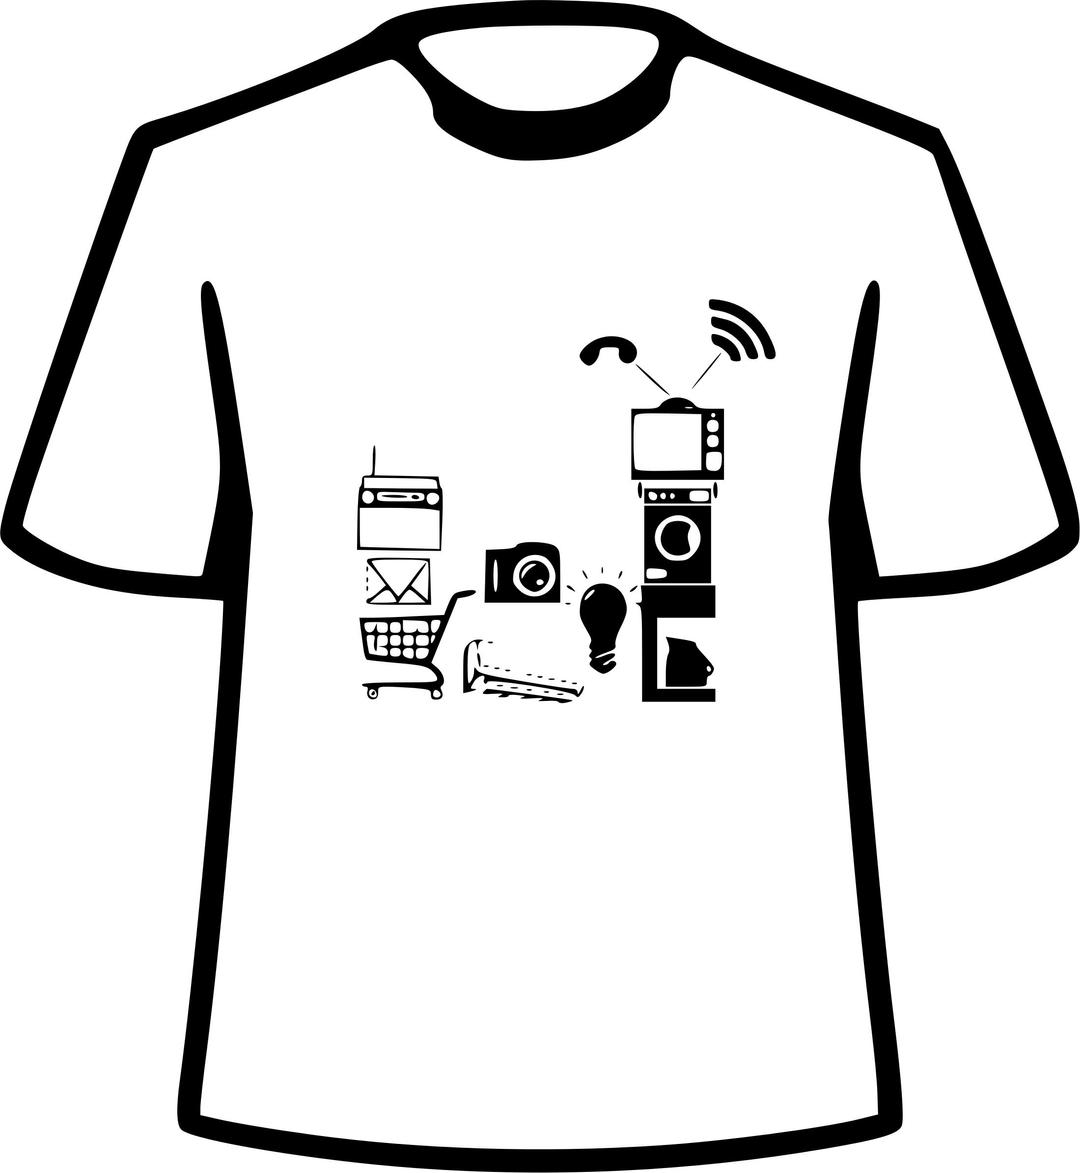 FOSSASIA 2016 #IoT T-shirt Design  png transparent